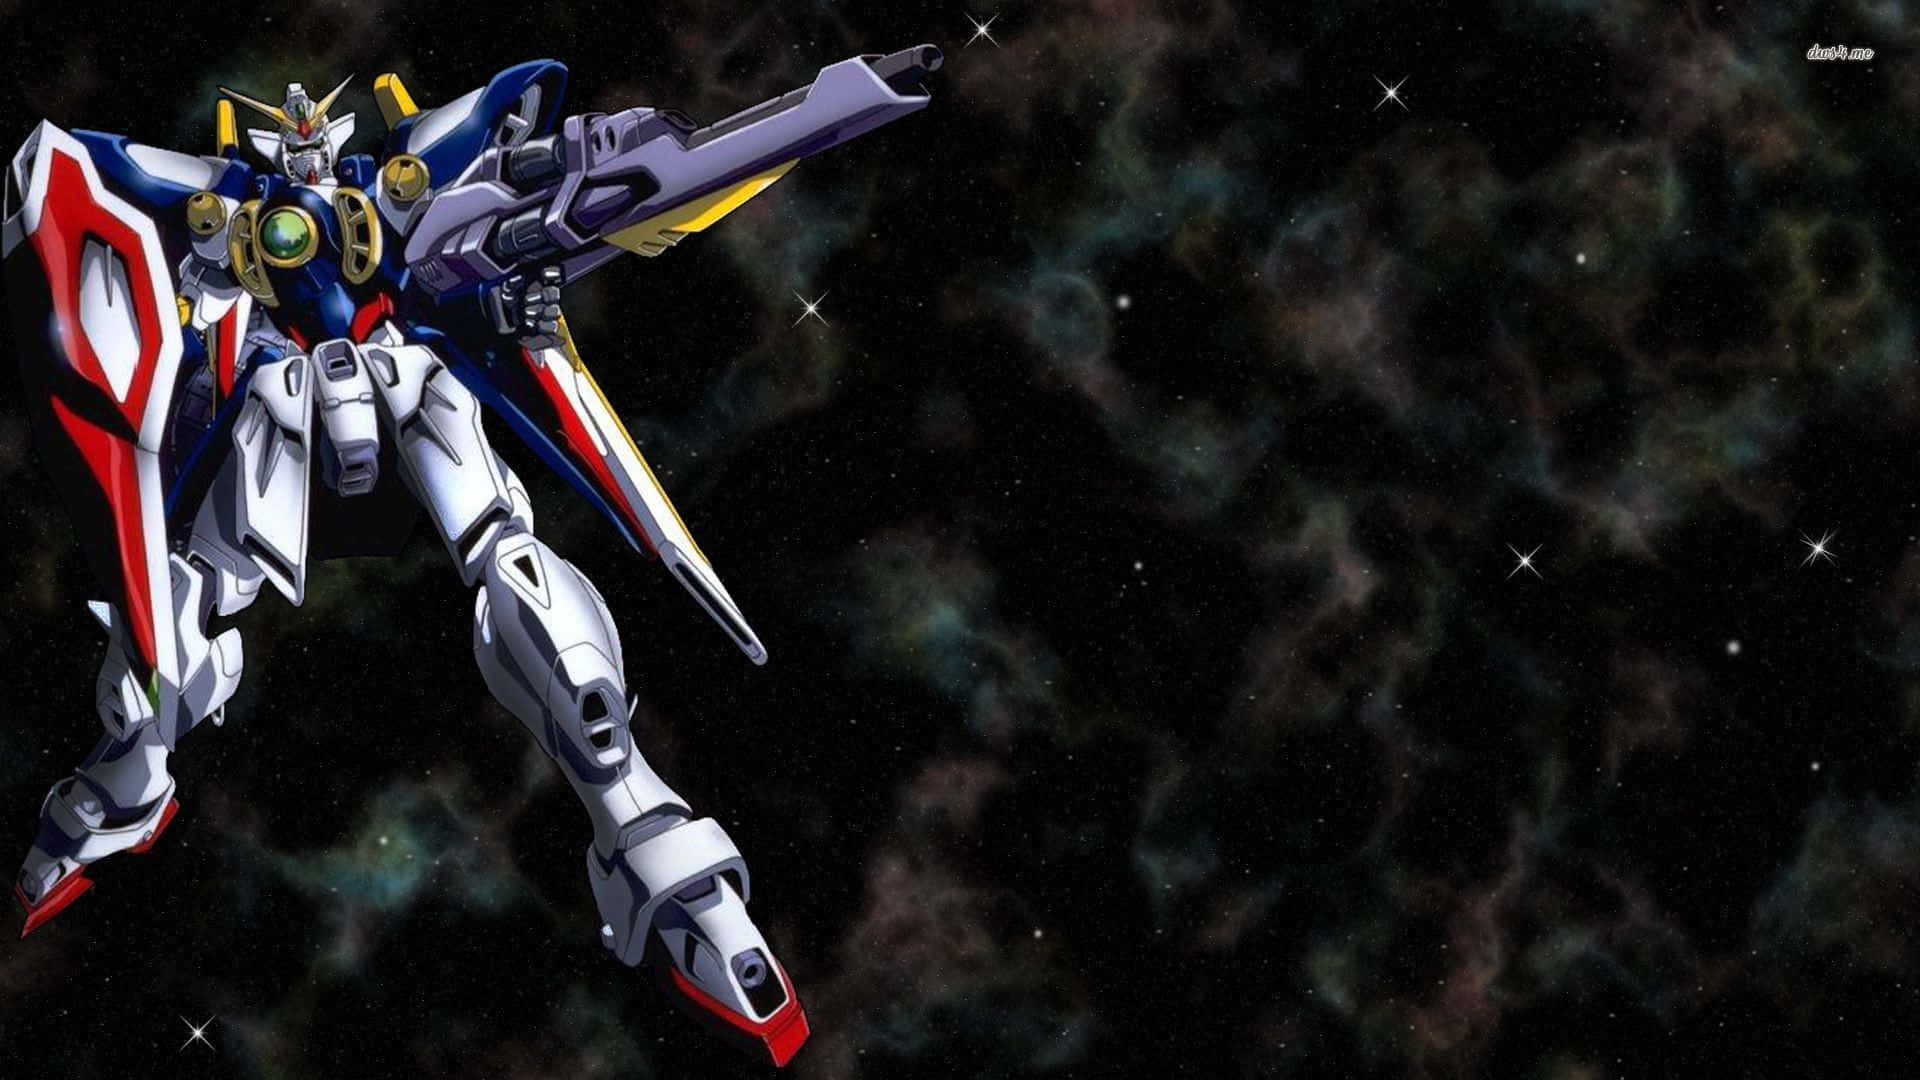 Gundamhintergrundbilder - Gundam Hintergrundbilder Wallpaper